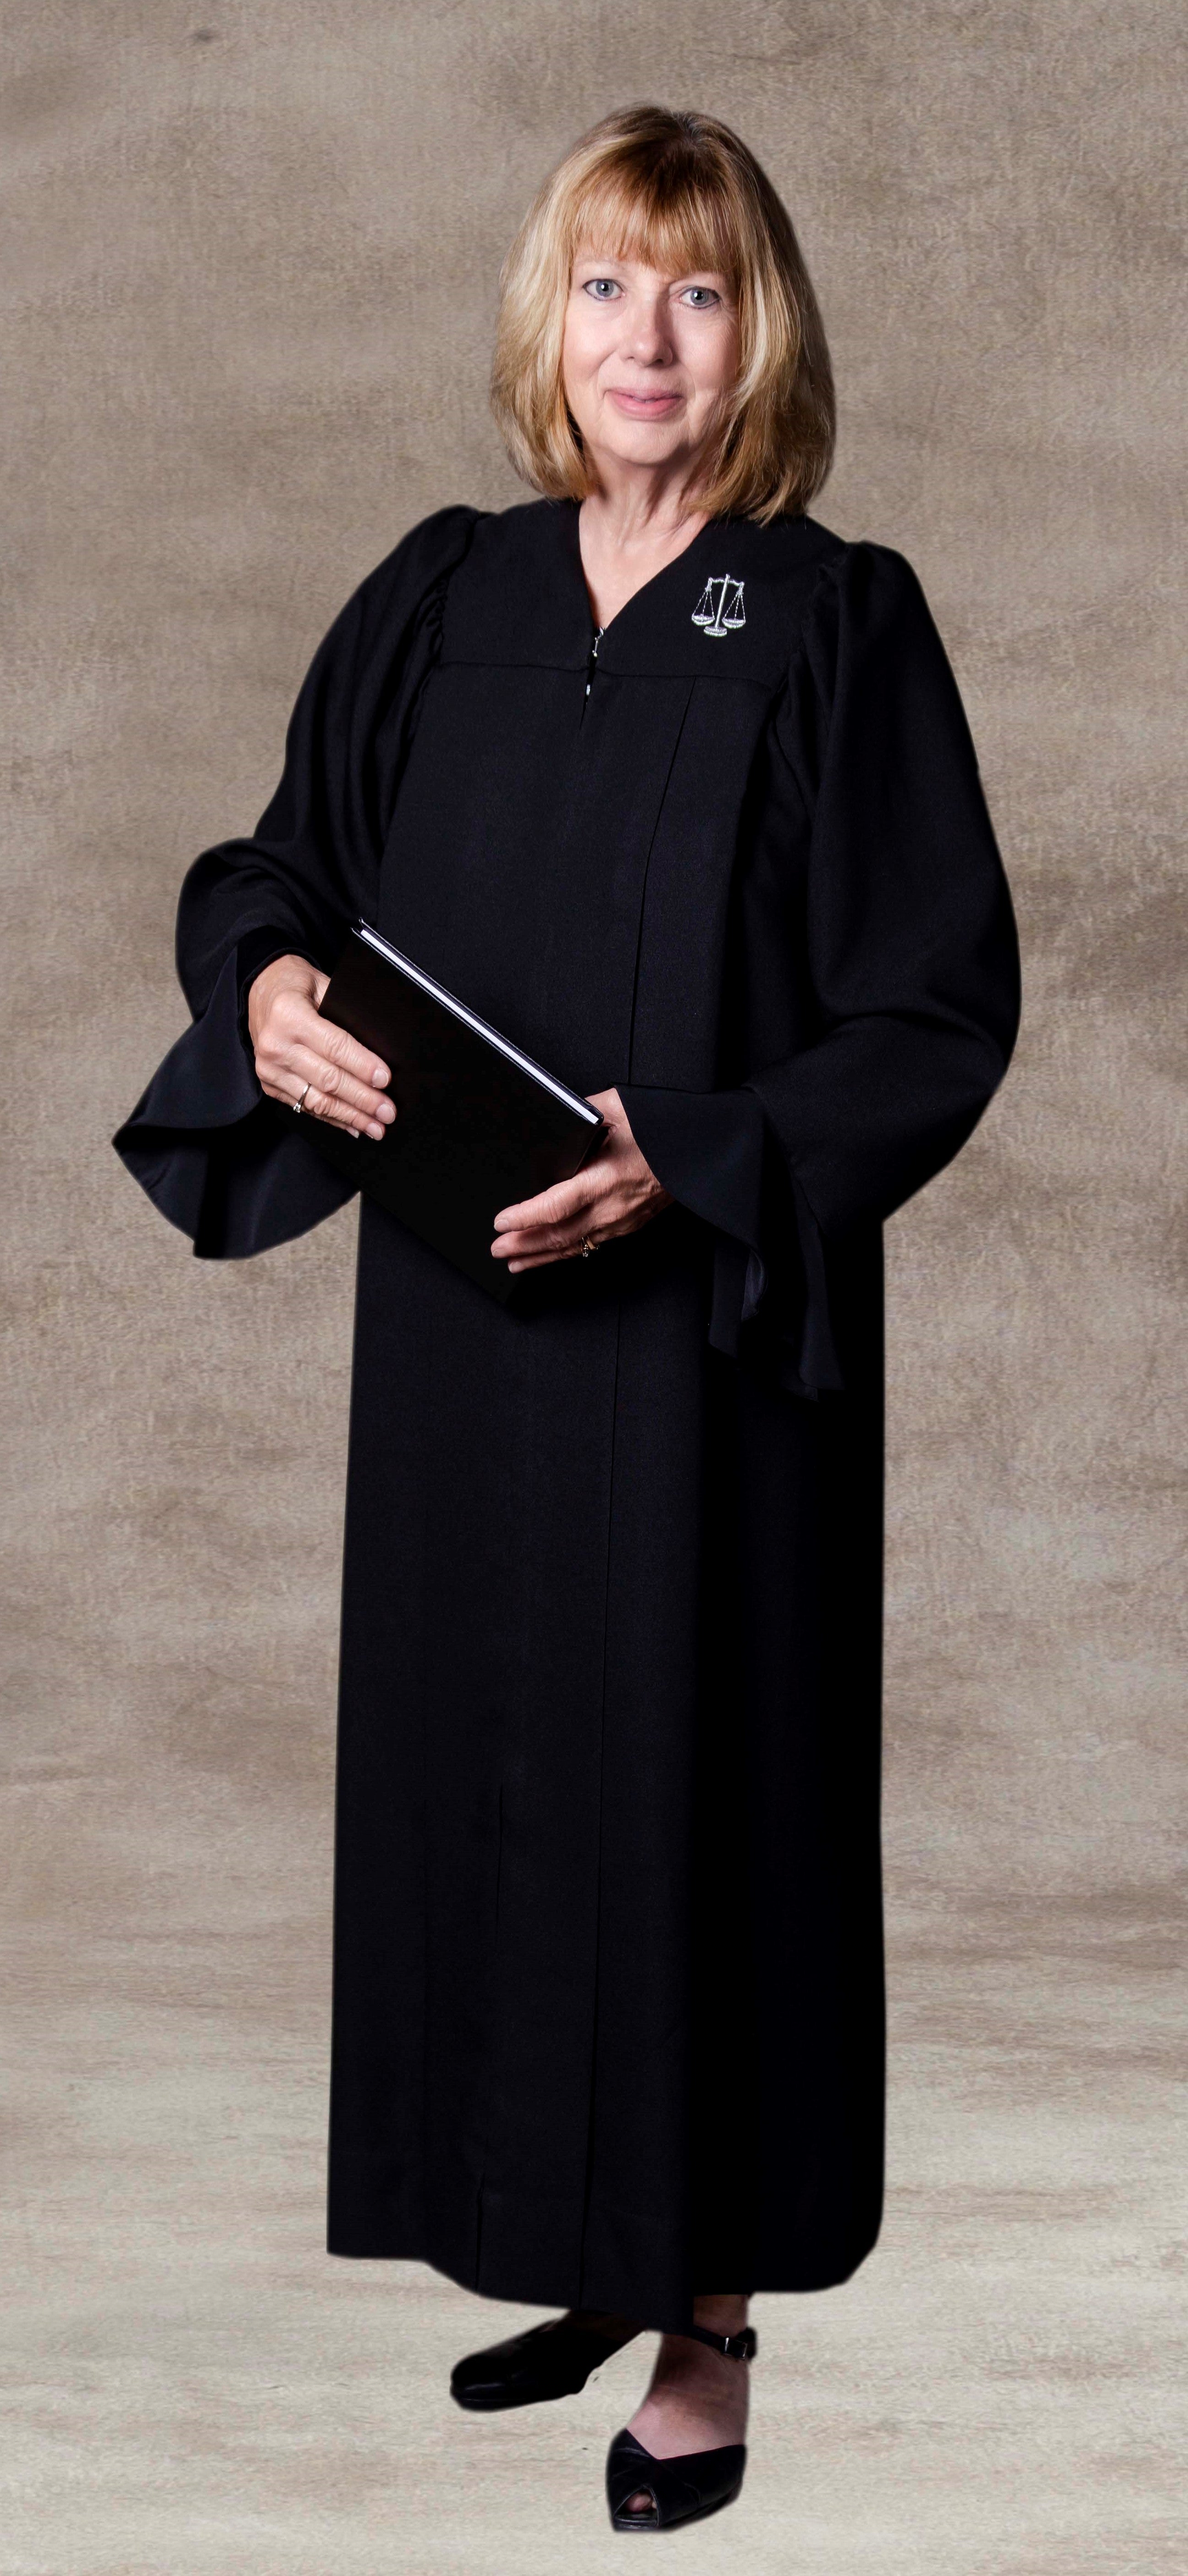 Abington Womens Judicial Robe